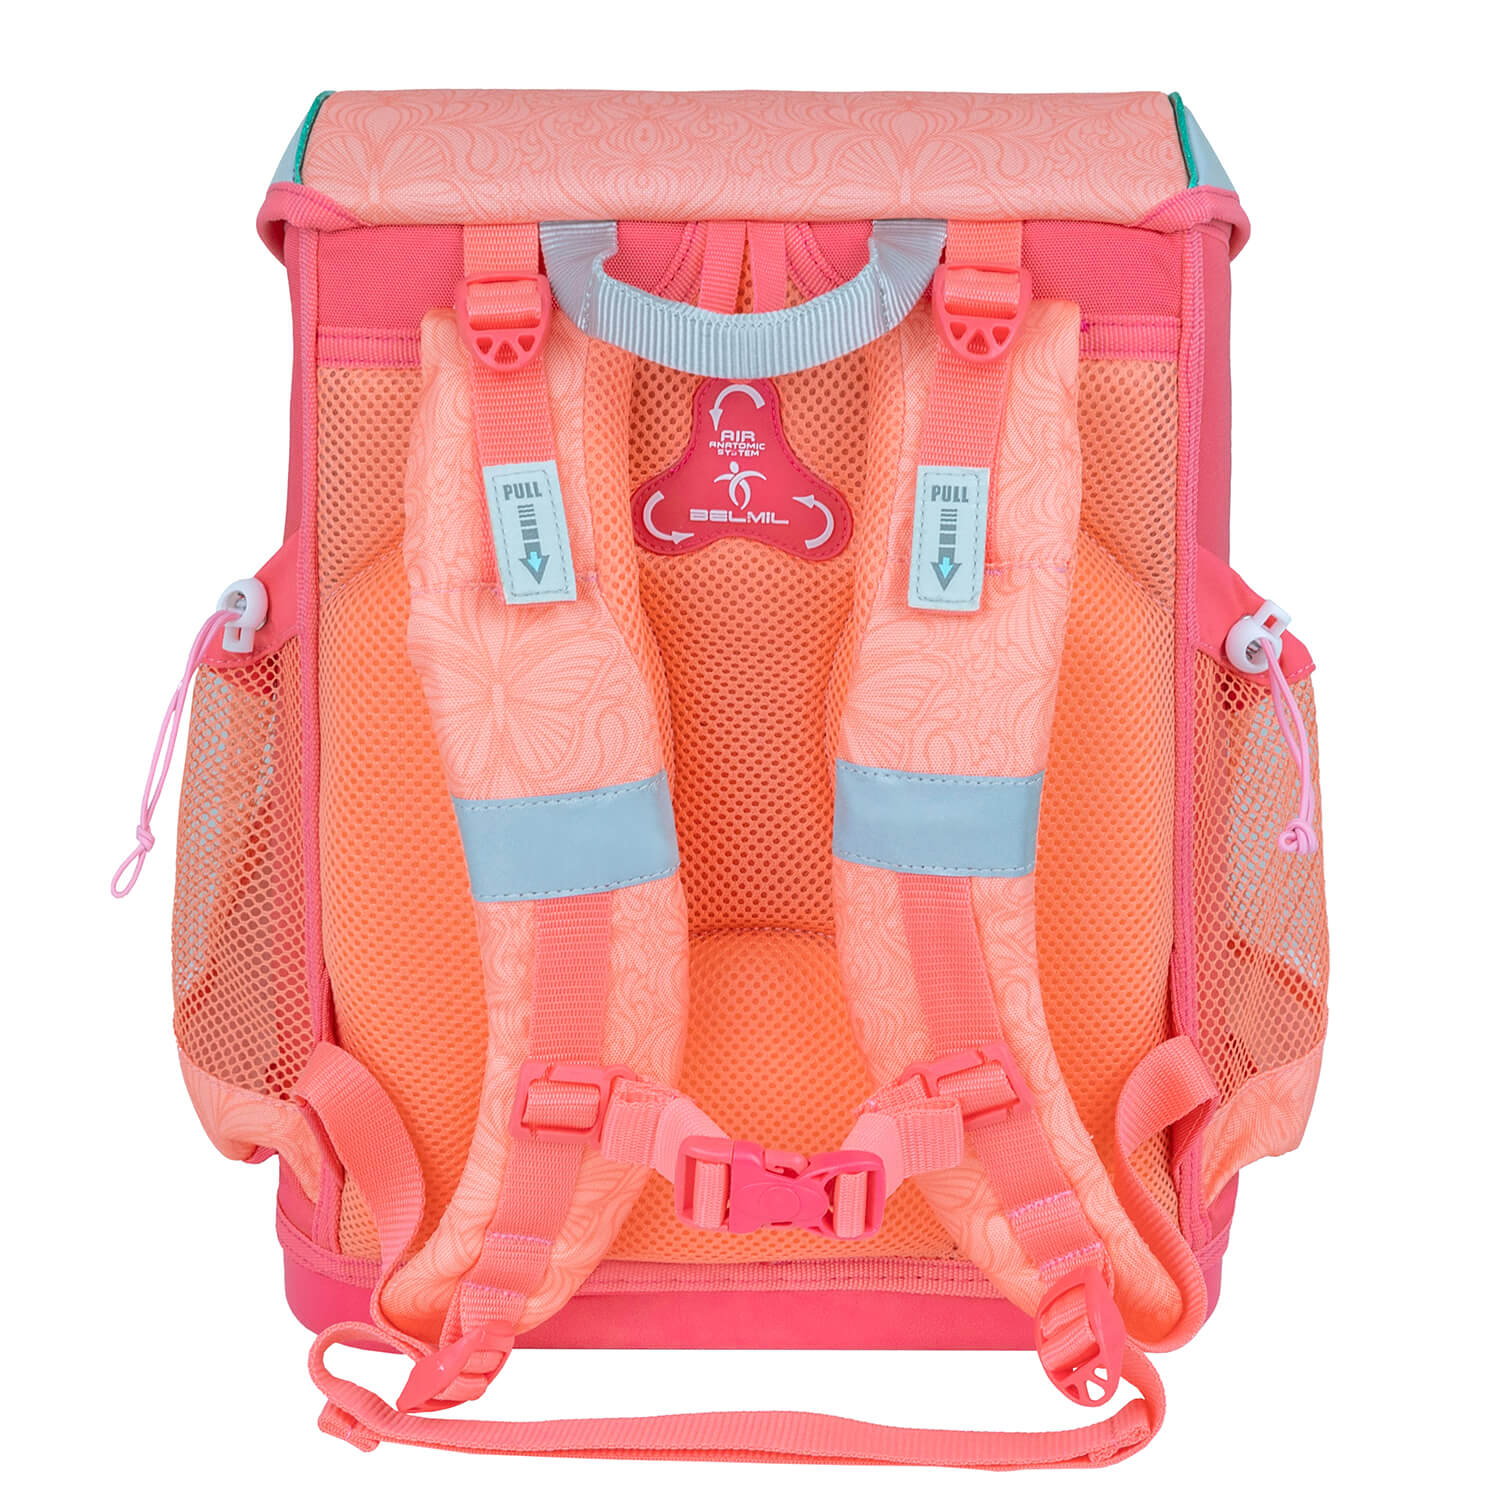 Mini-Fit Cute Doe schoolbag set 4 pcs